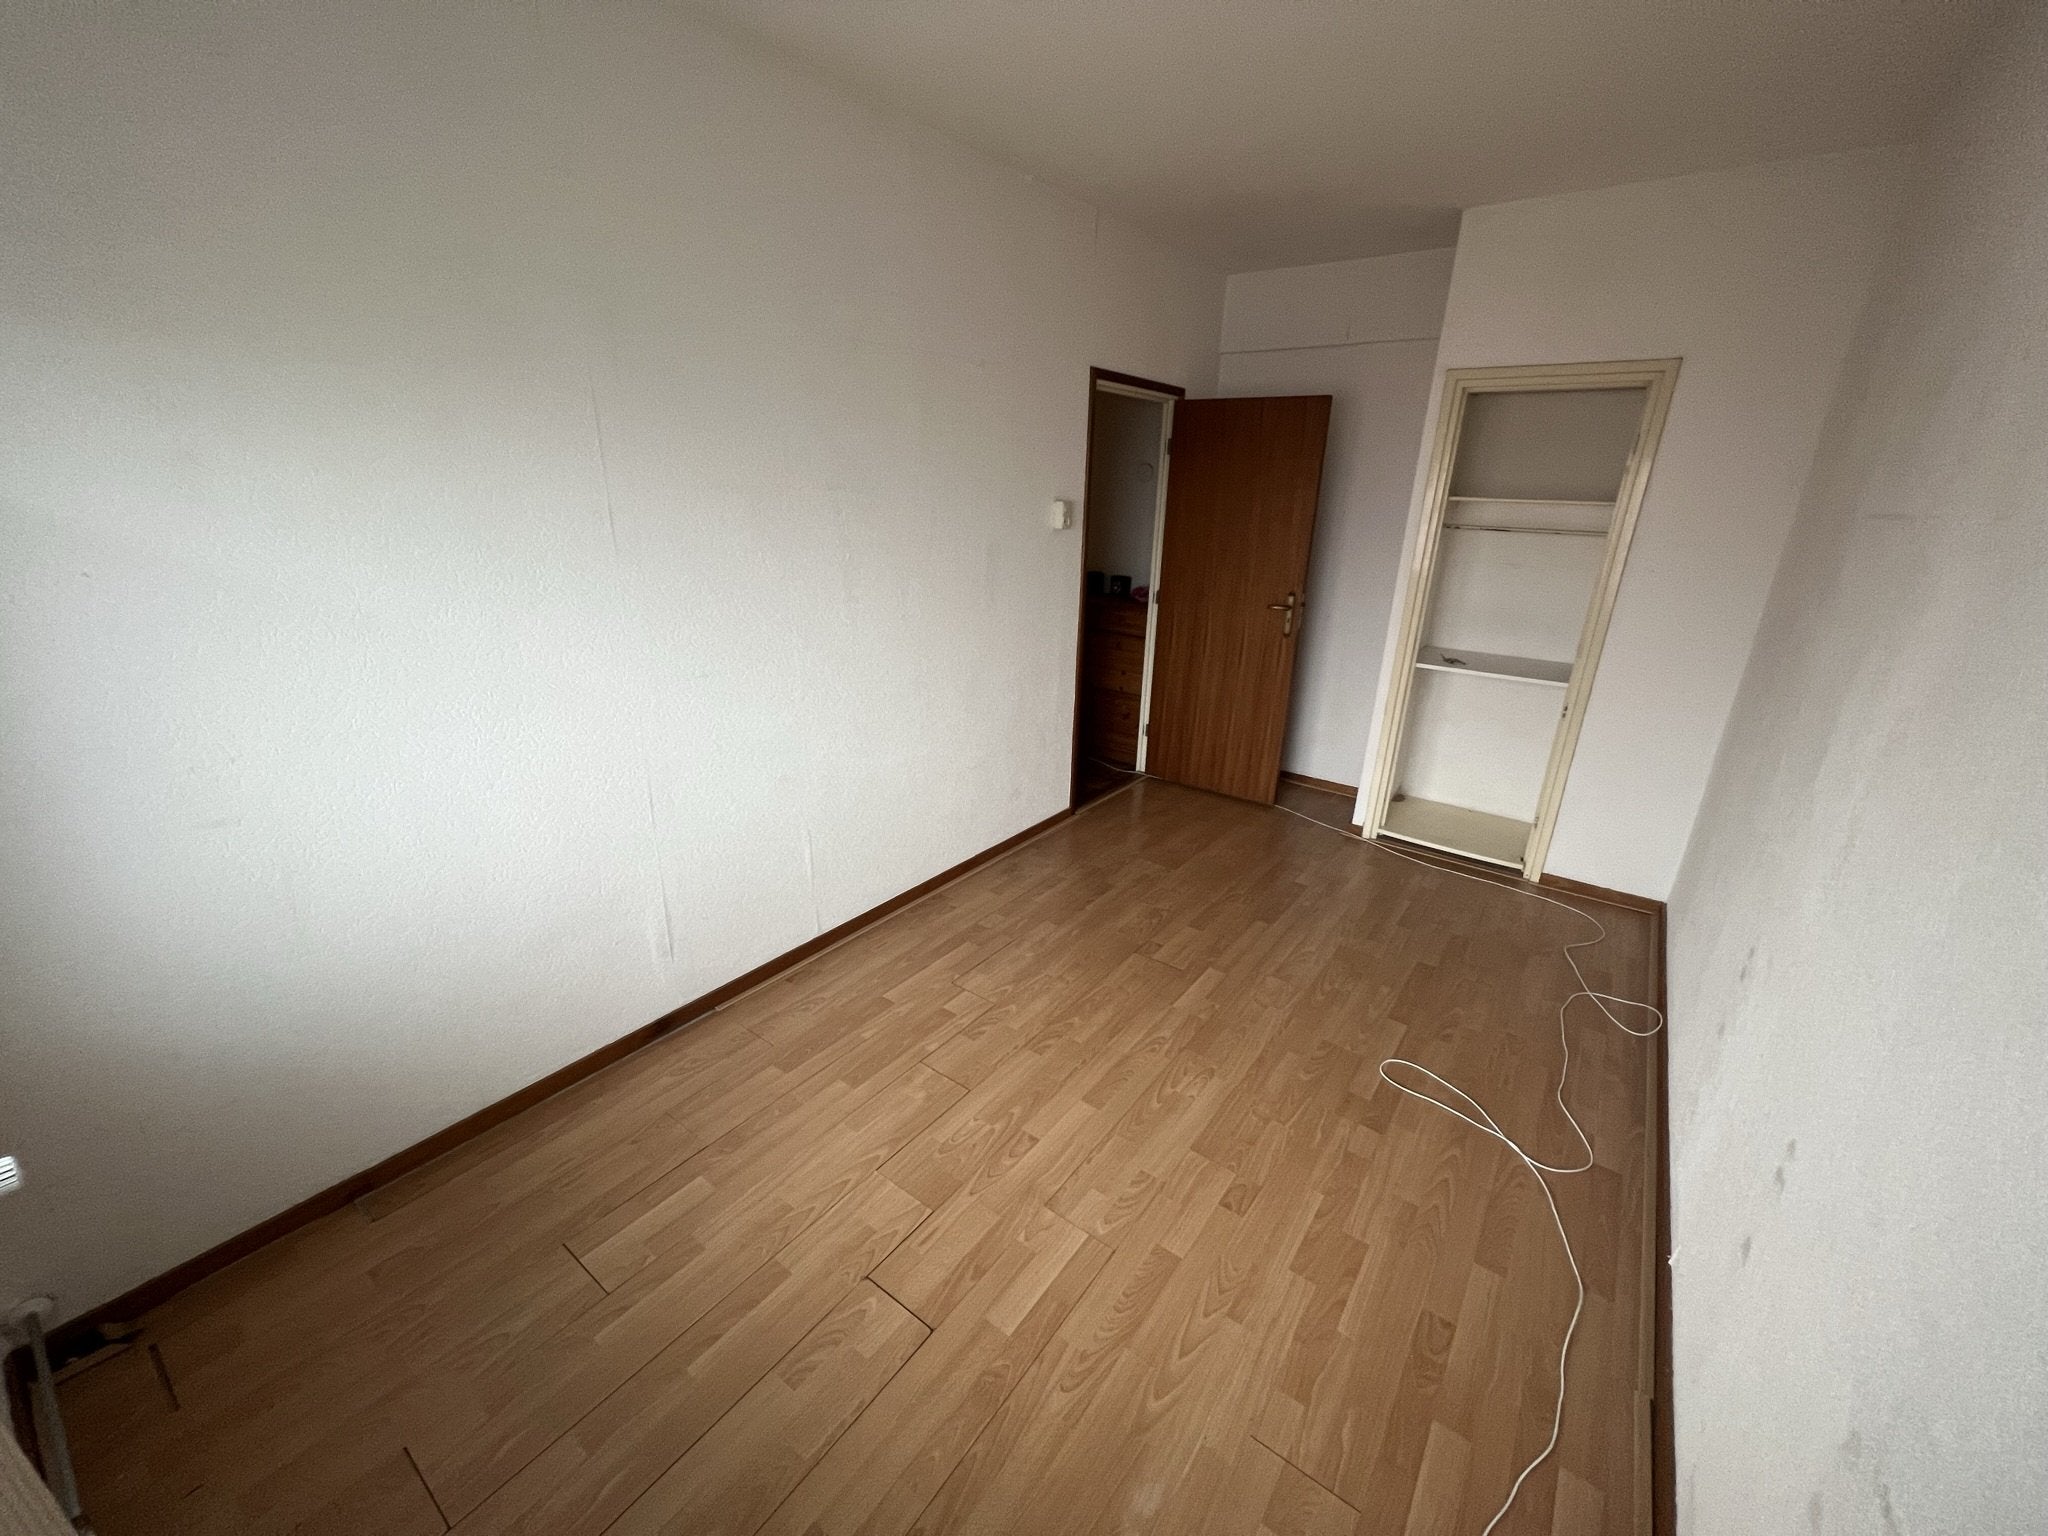 Bekijk for 1/10 van apartment in Hengelo